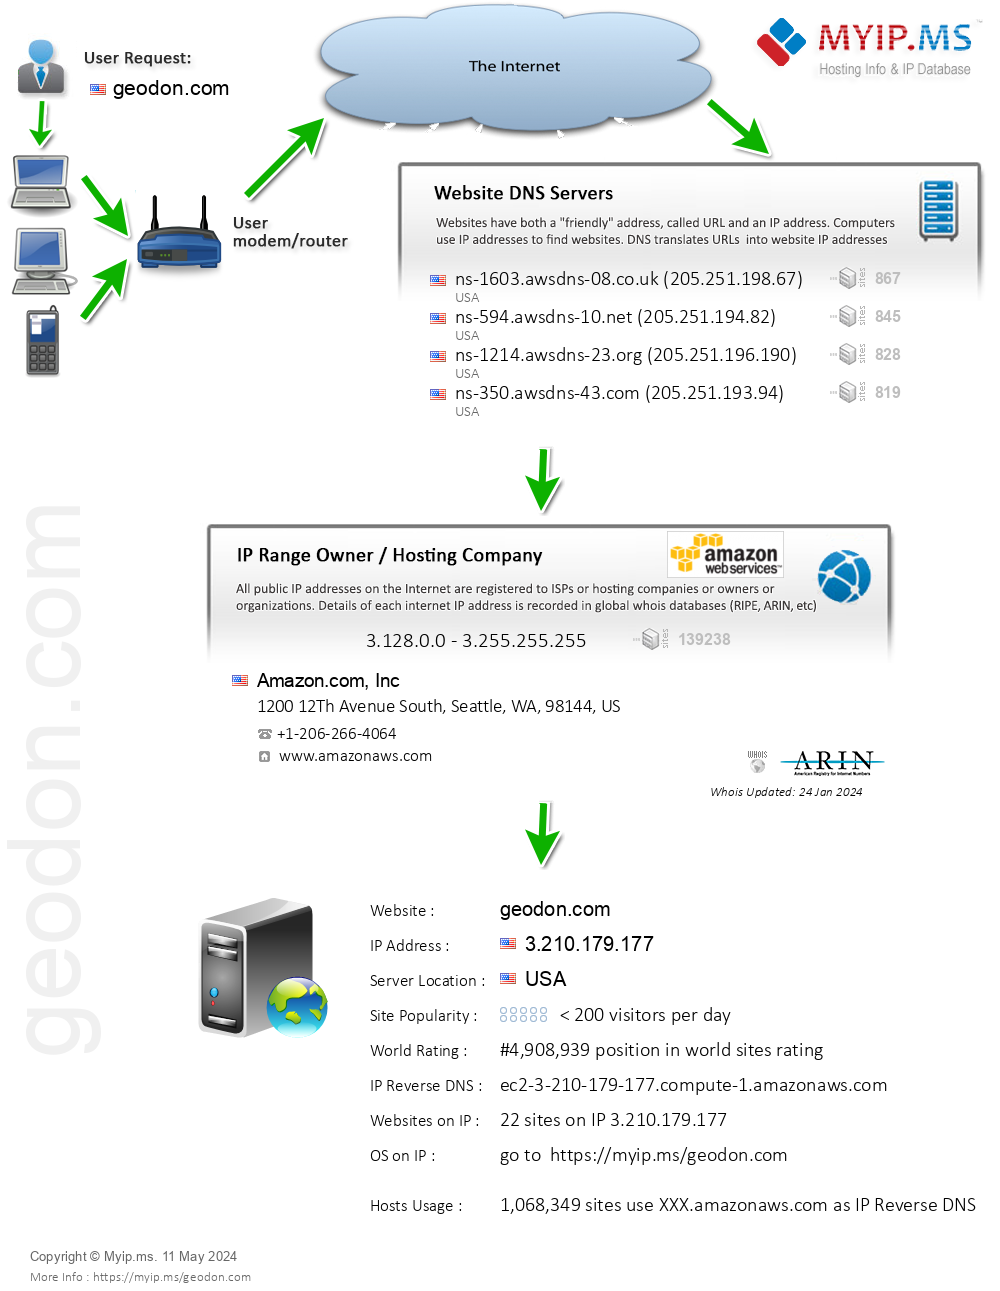 Geodon.com - Website Hosting Visual IP Diagram